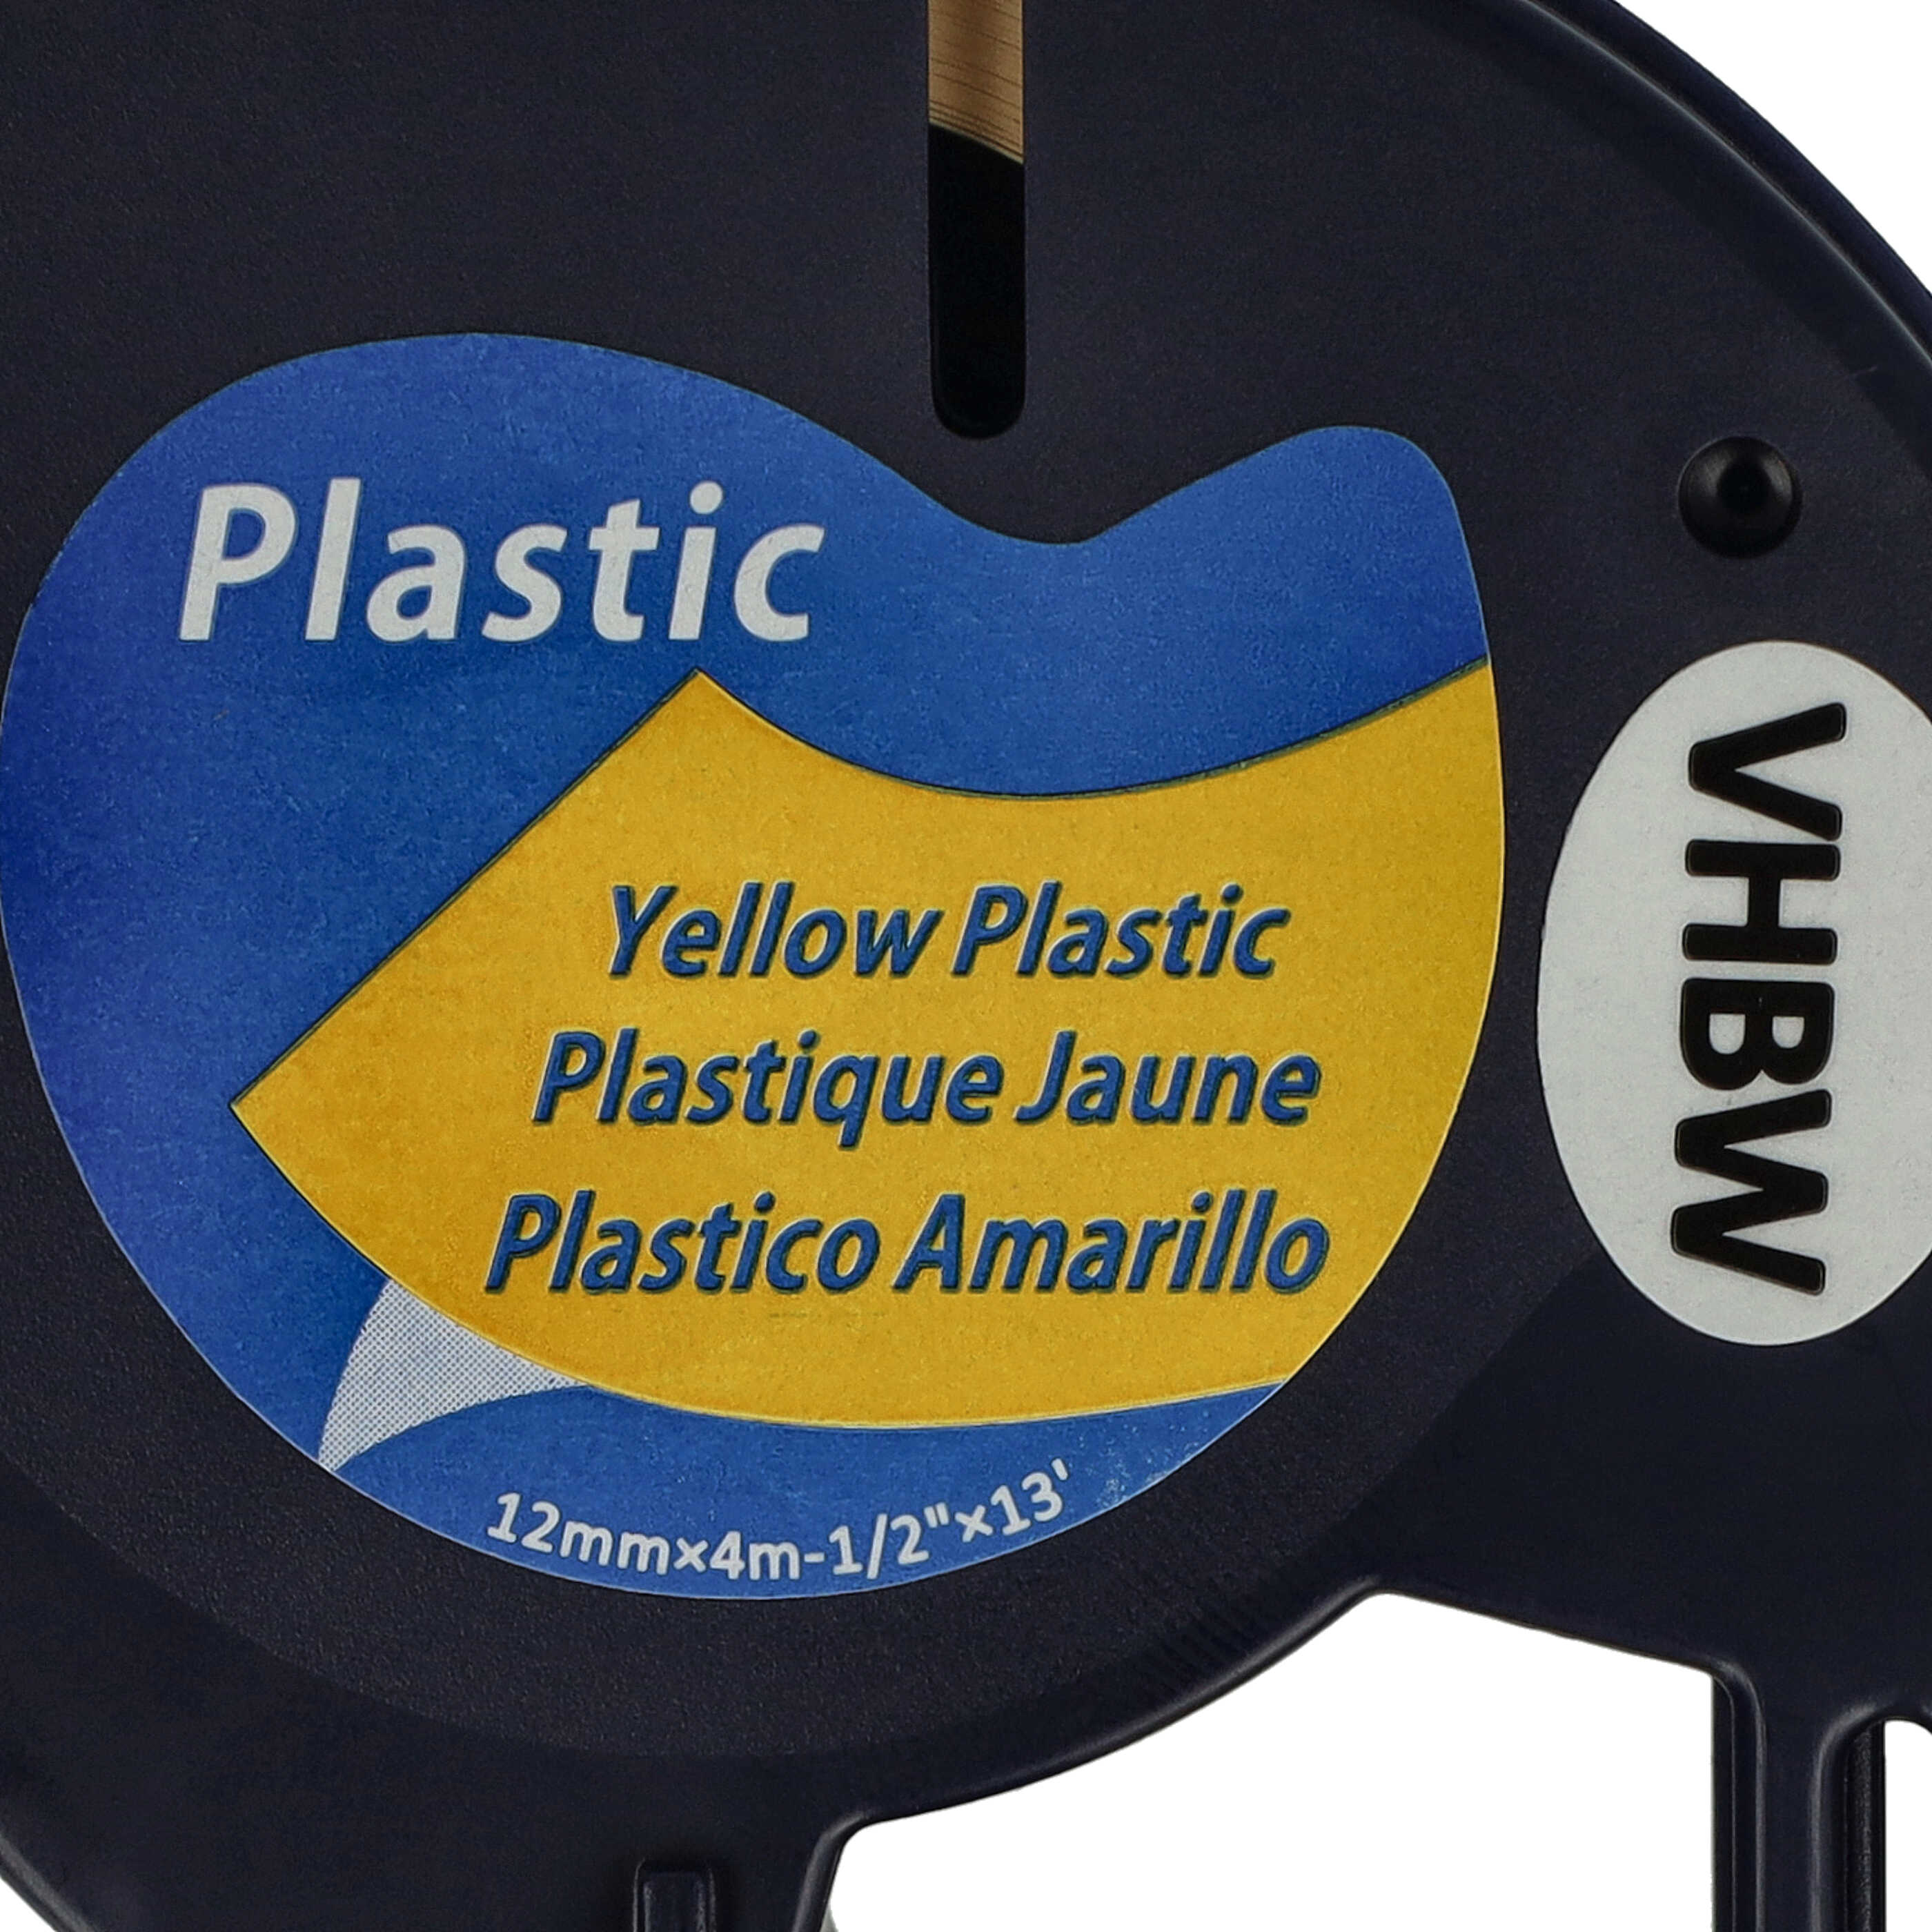 Cassette à ruban en plastique remplace Dymo 91222, S0721670 - 12mm lettrage Noir ruban Jaune, plastique